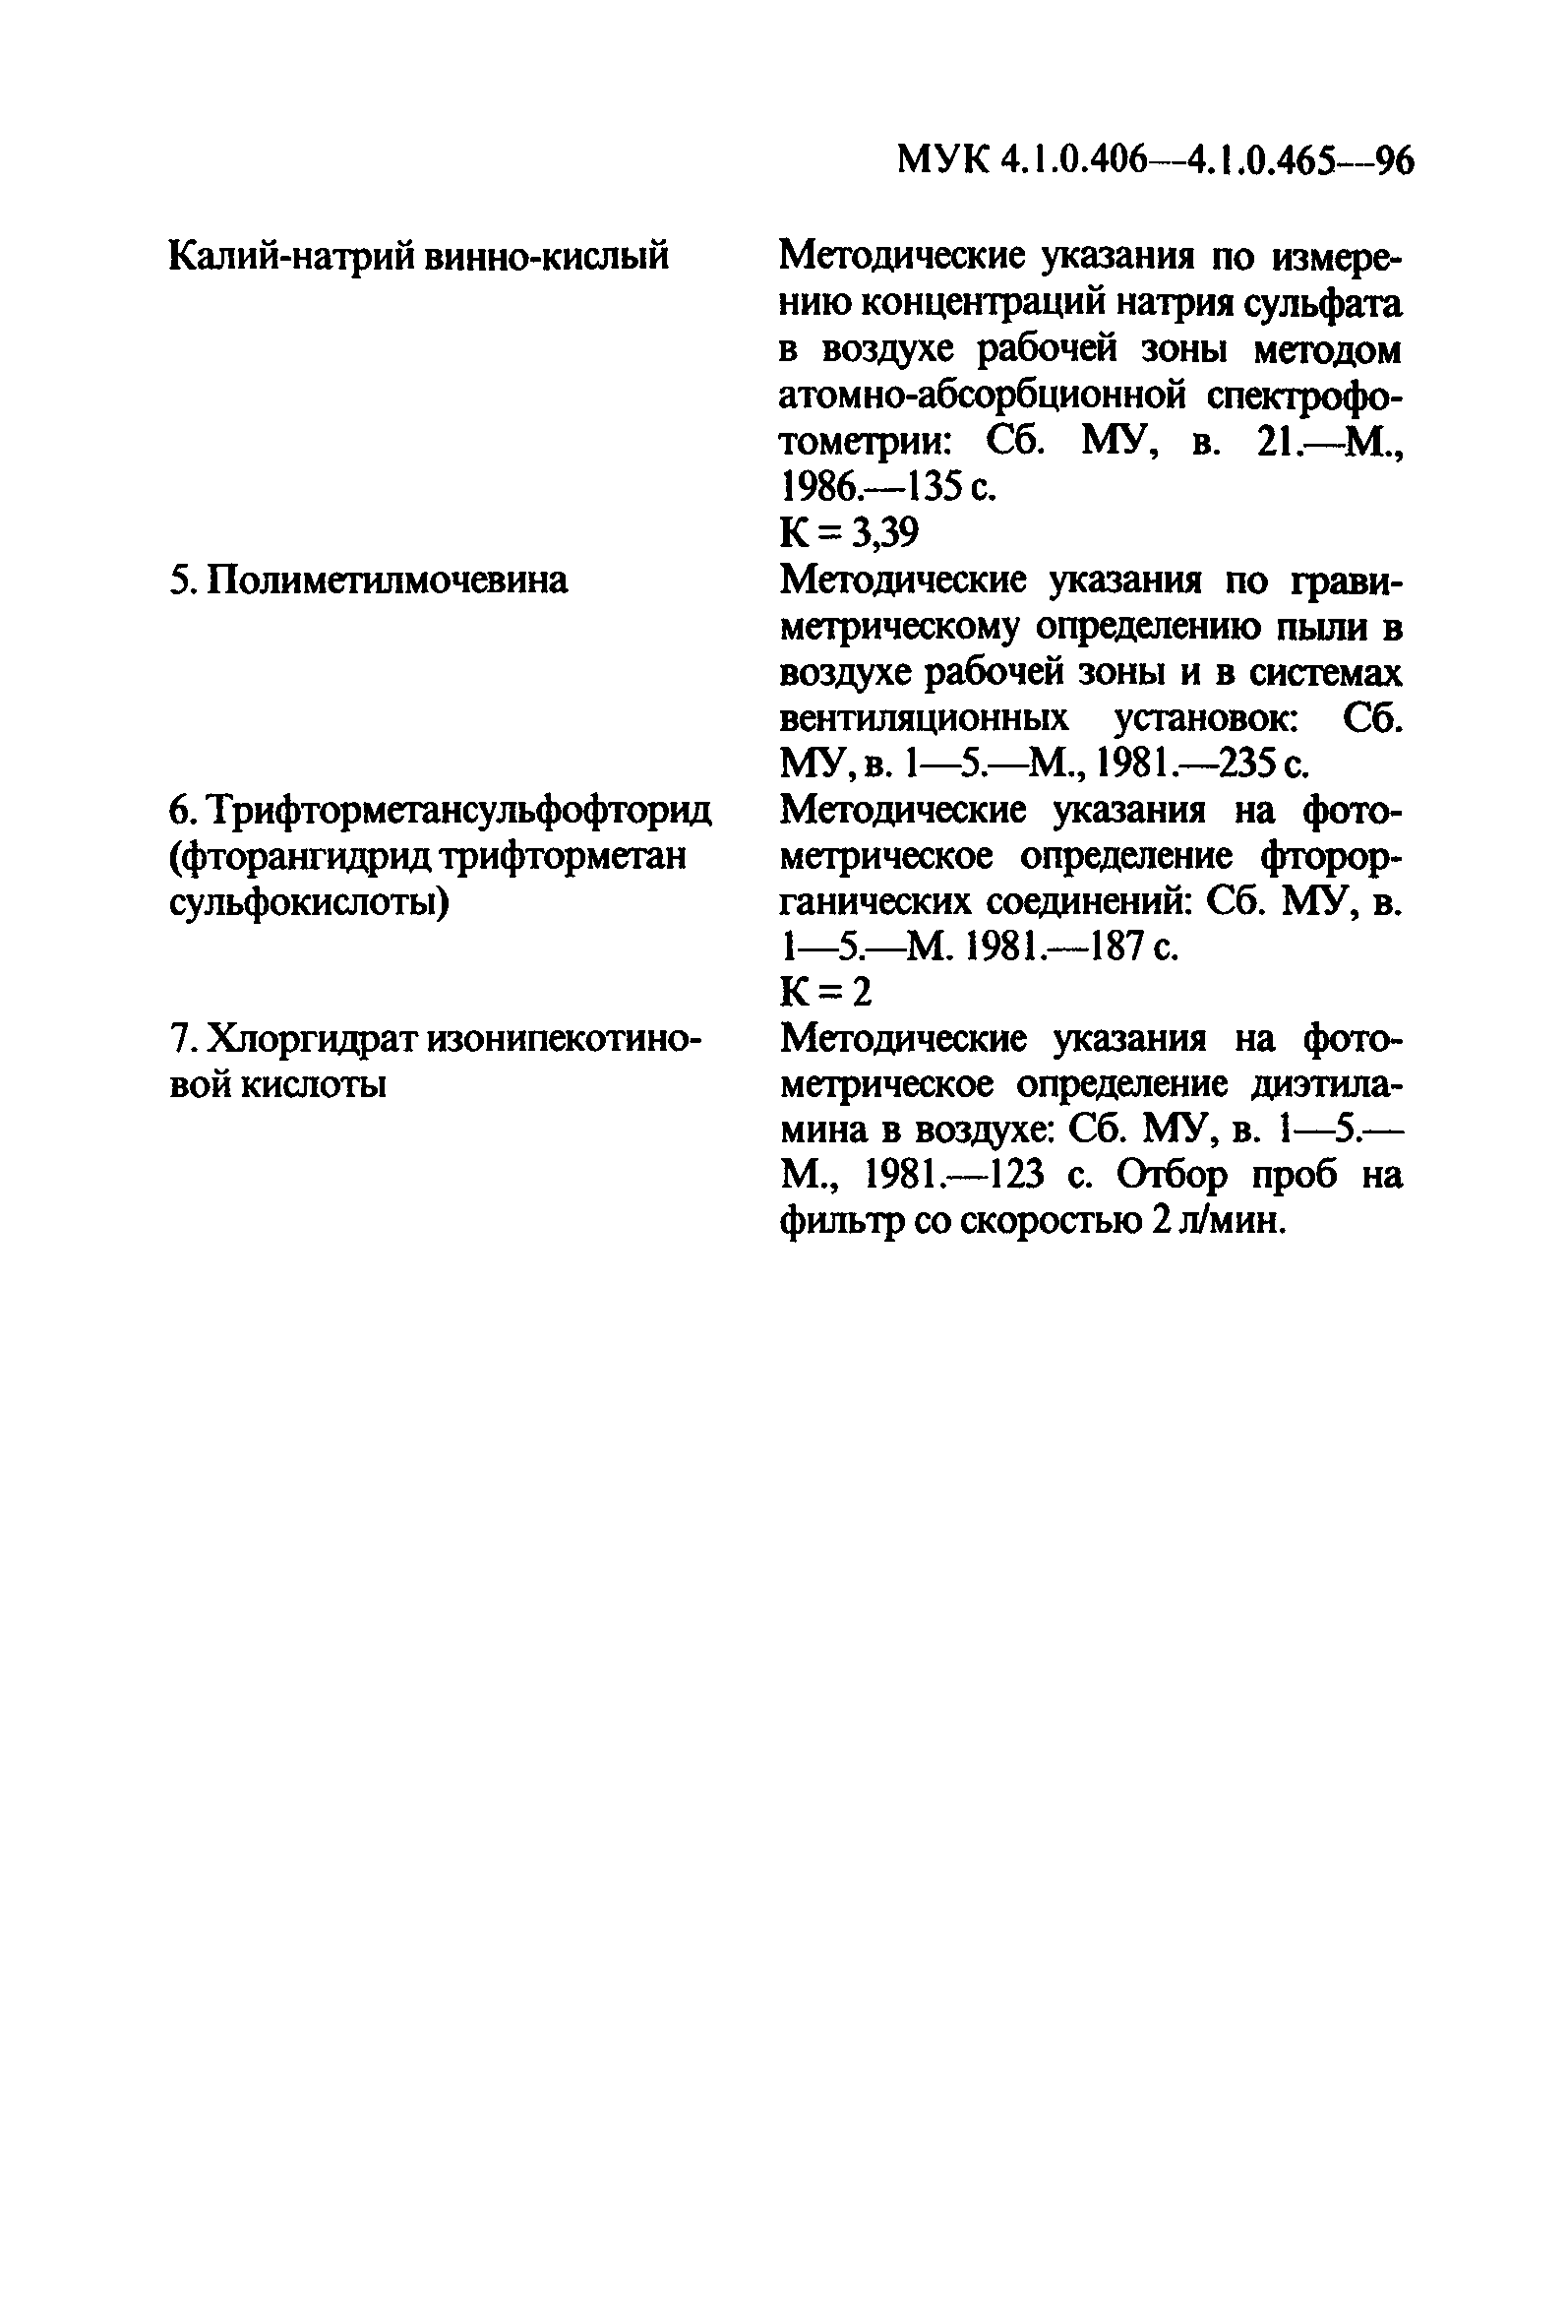 МУК 4.1.0.444-96